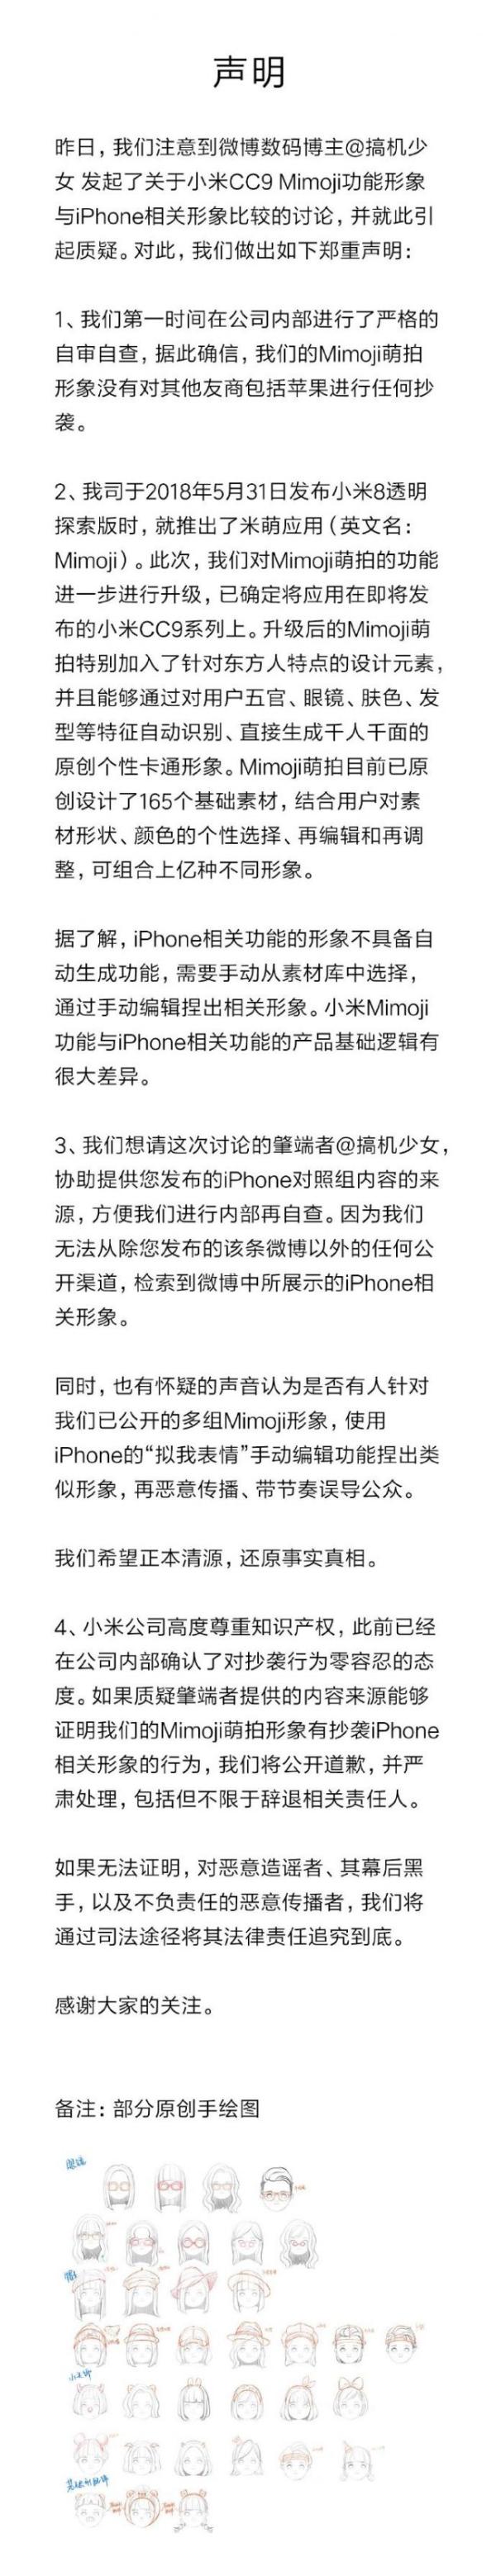 Mimoji功能引争论 小米公司回应：已严格自身自查并未抄袭